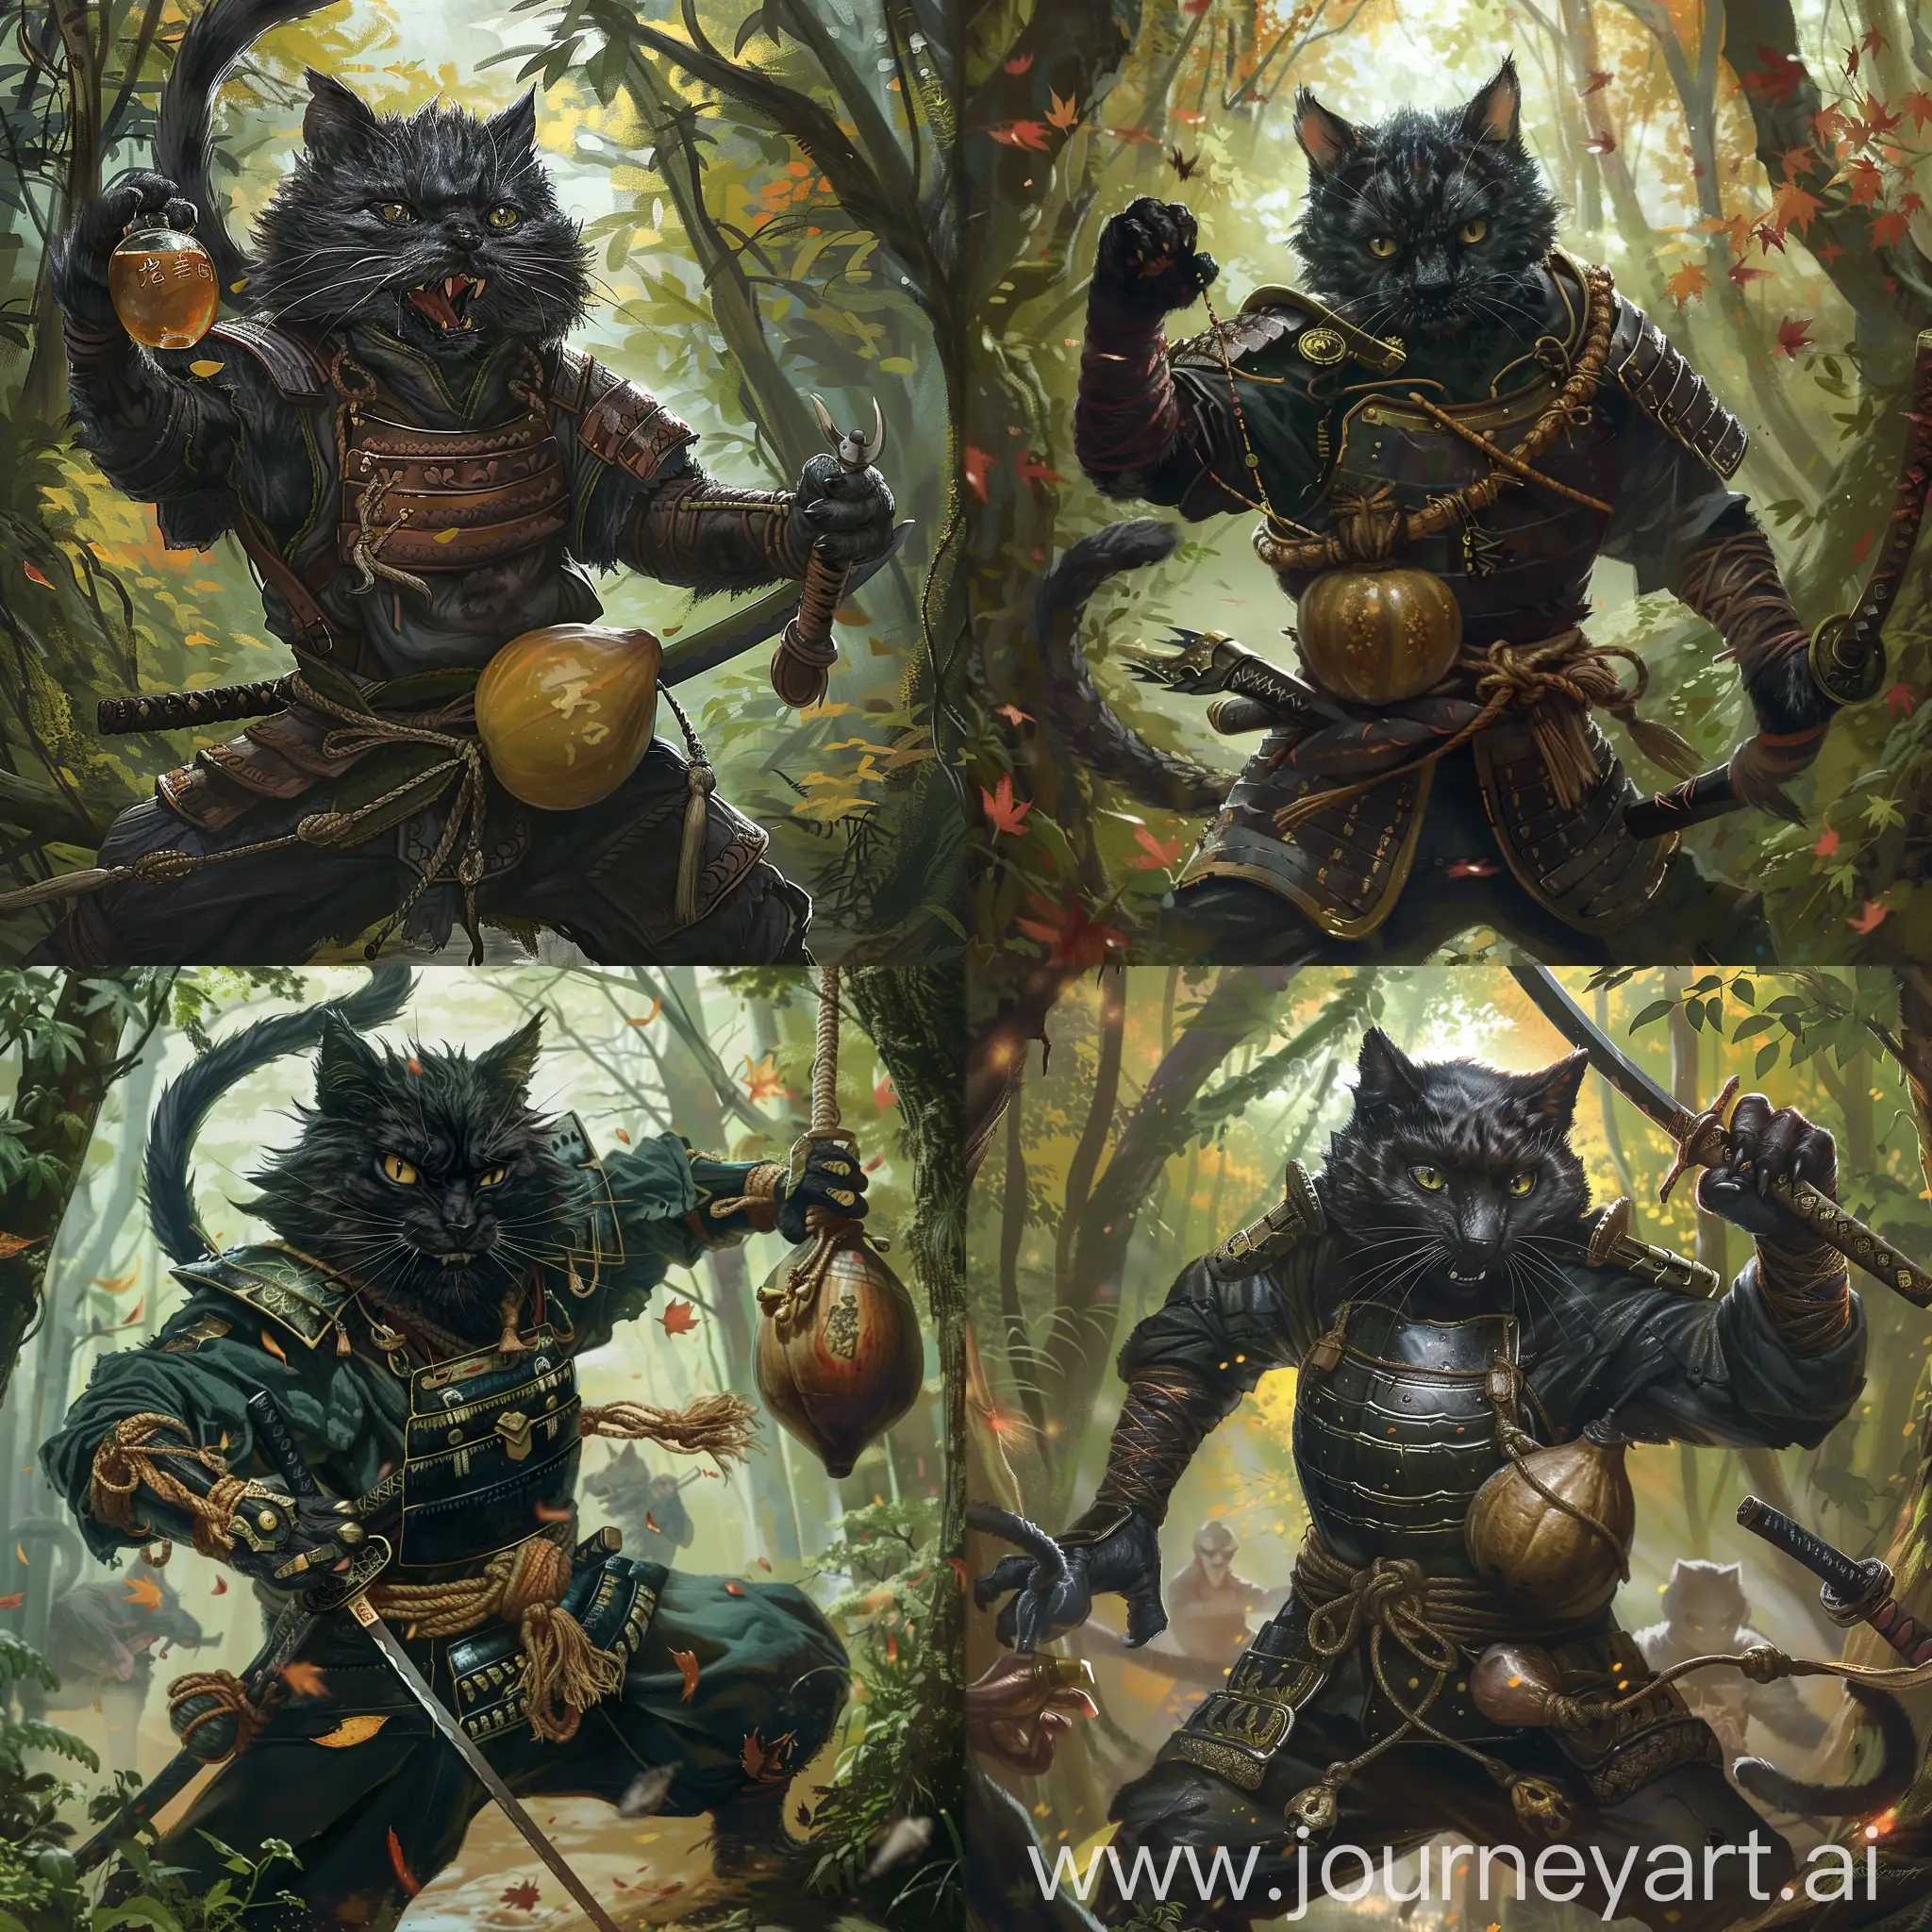 Tabaxi macho de color negro, que parece un gato de cola larga y tupida, tiene una armadura de cuero que parece estar estilizada para parecer ropa samurai tradicional, tiene una calabaza llena de licor atada a la cintura, está siendo emboscado en un bosque y tiene su katana en mano de manera ofensiva